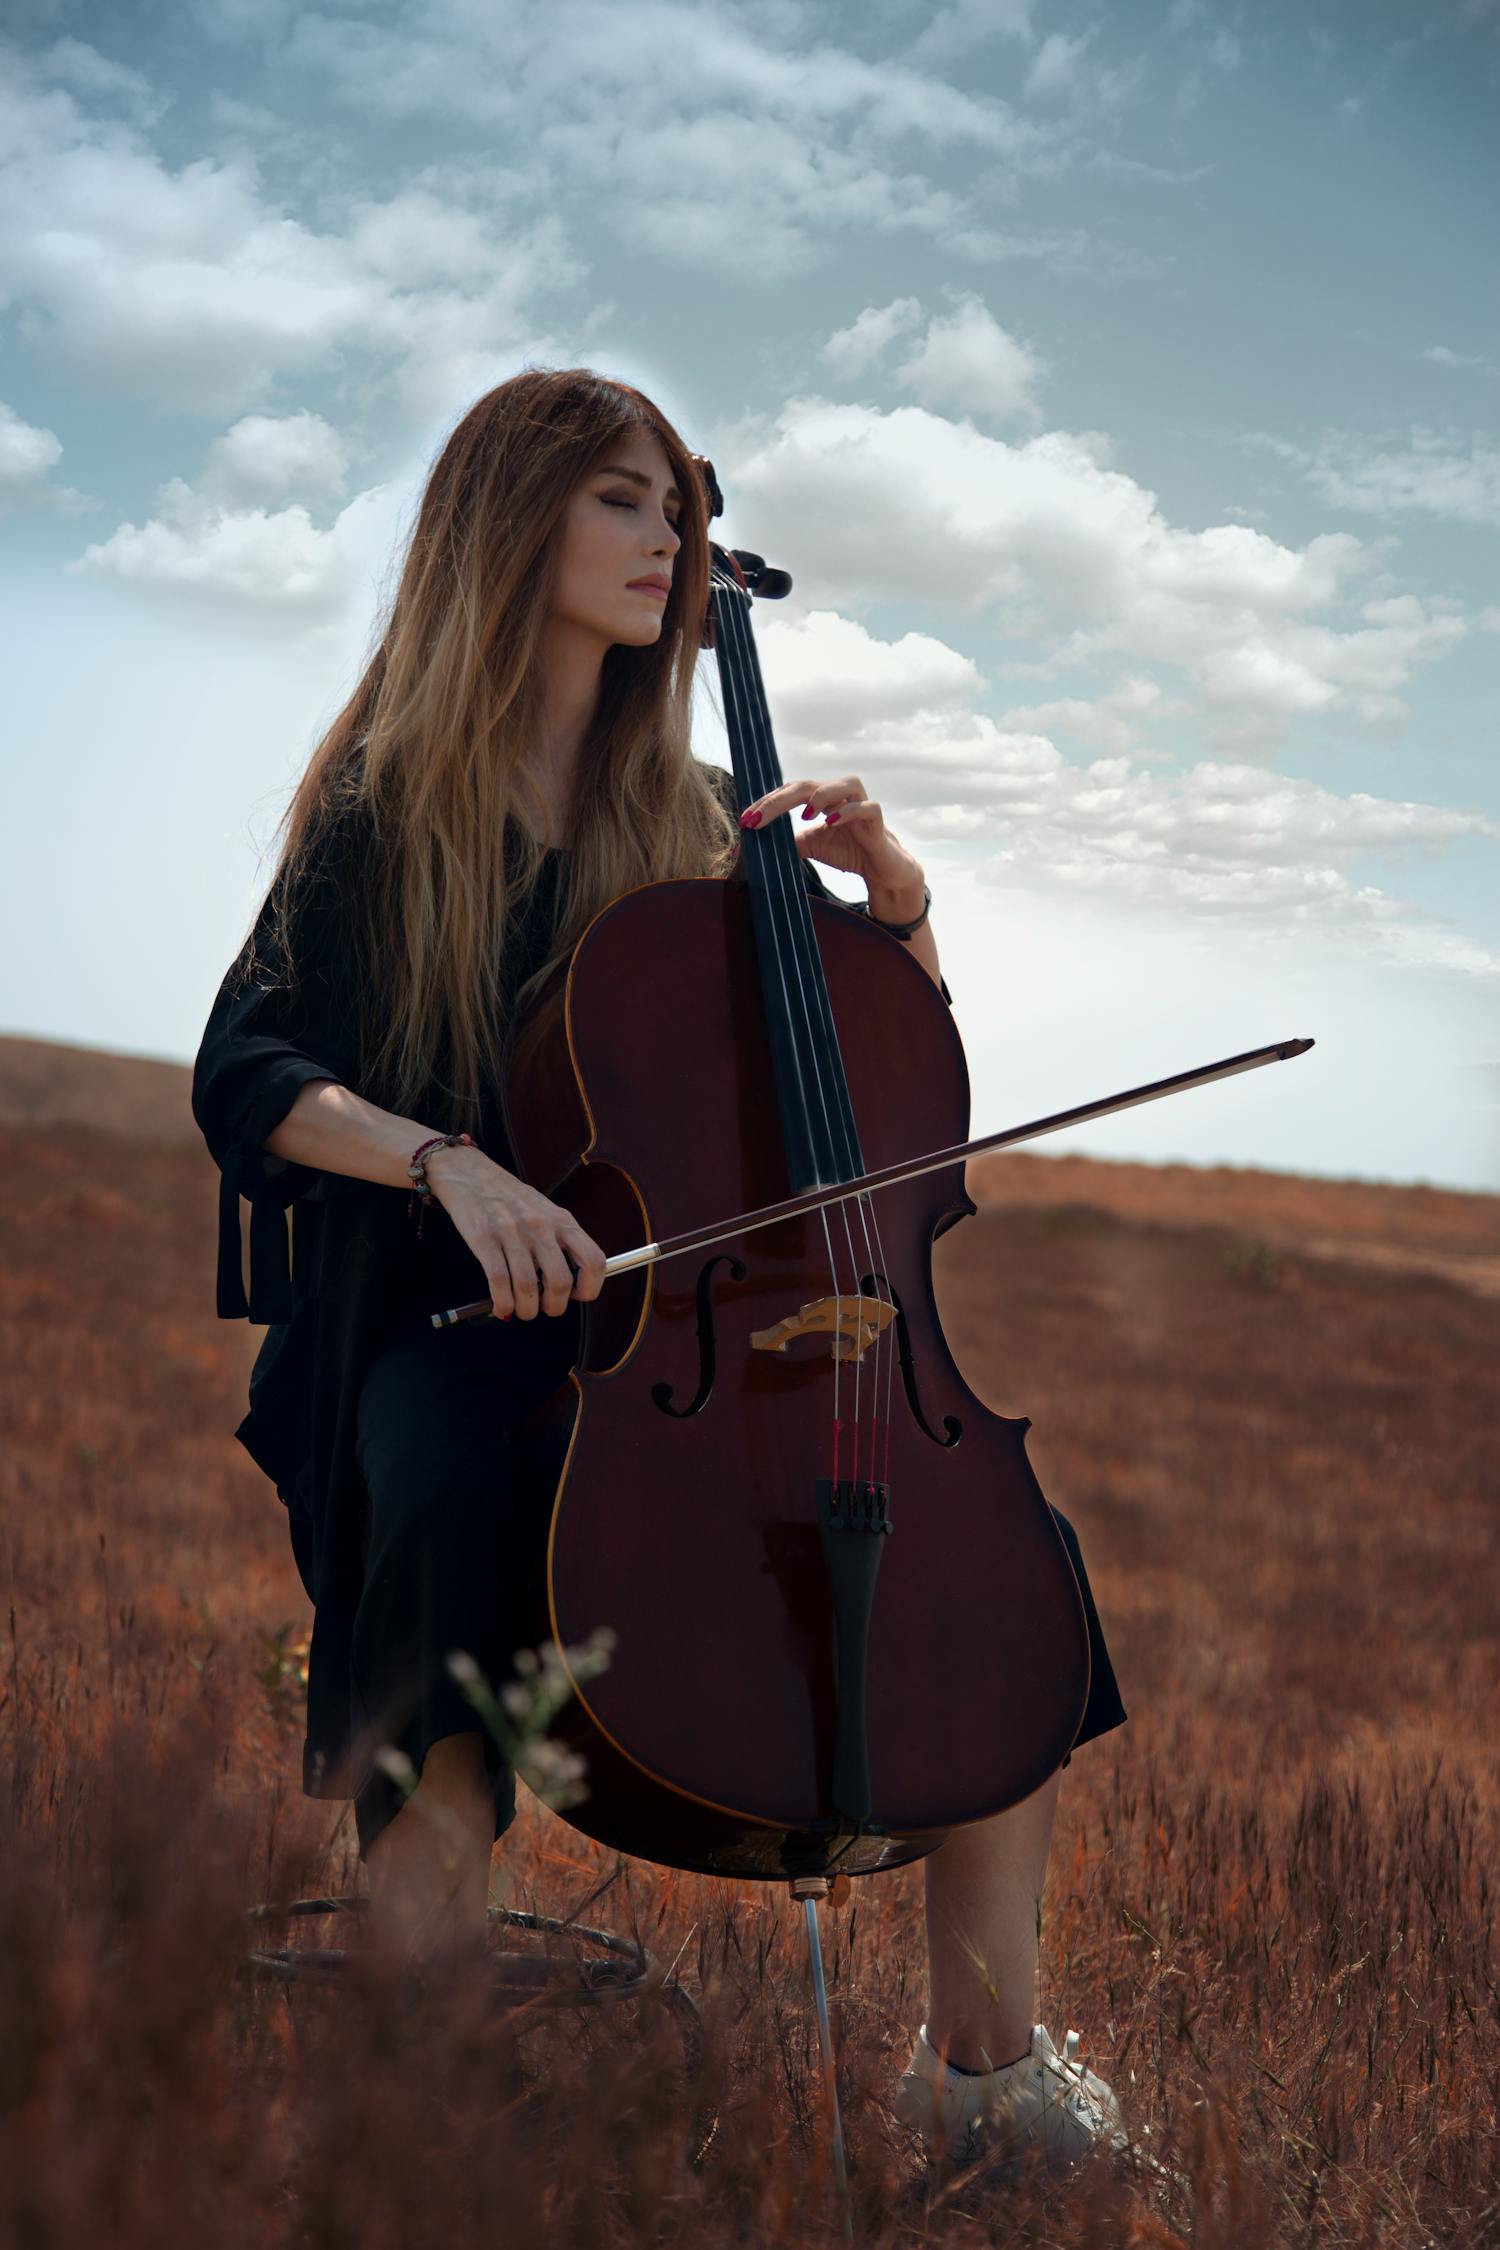 大提琴演奏家林希映大提琴学生音乐会 - 音乐演出 - 中国音乐网